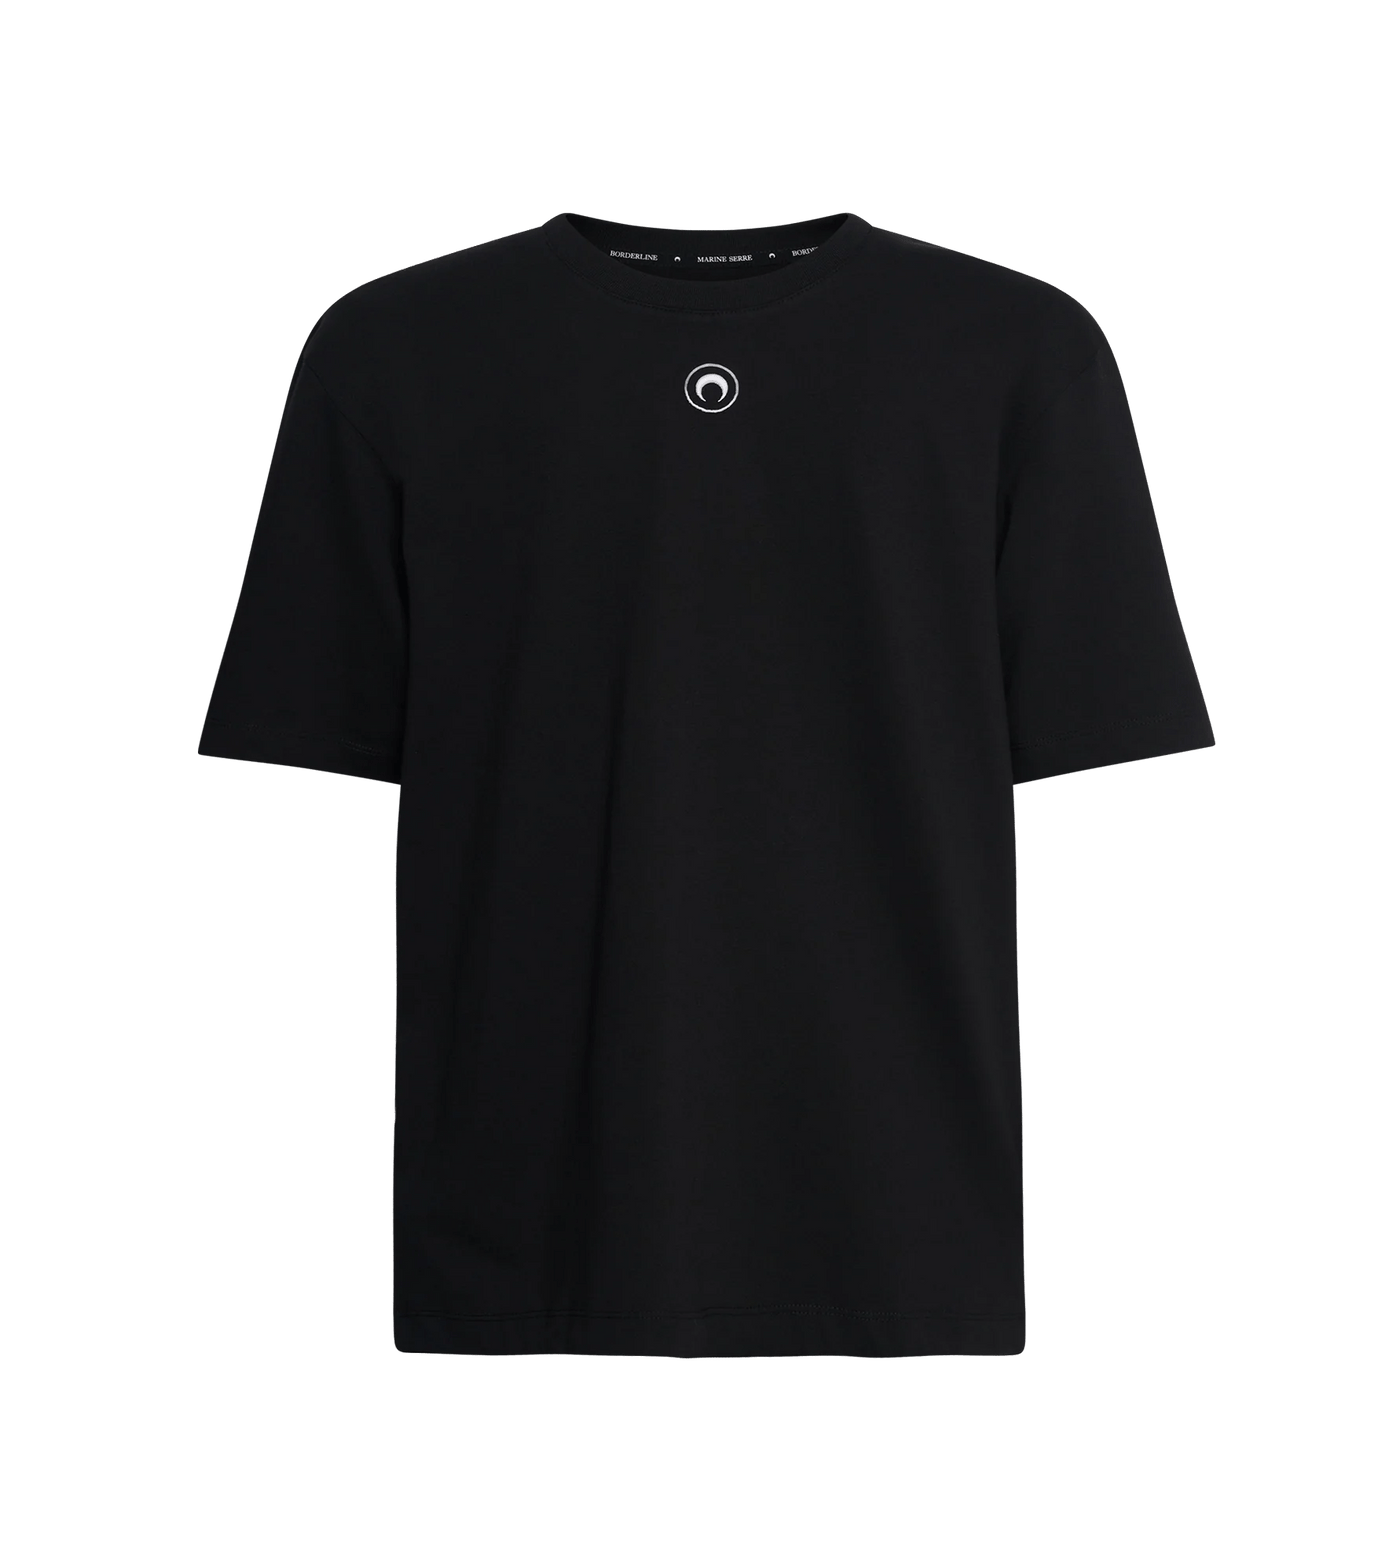 Marine Serre - T Shirt black uni en coton biologique - Lothaire